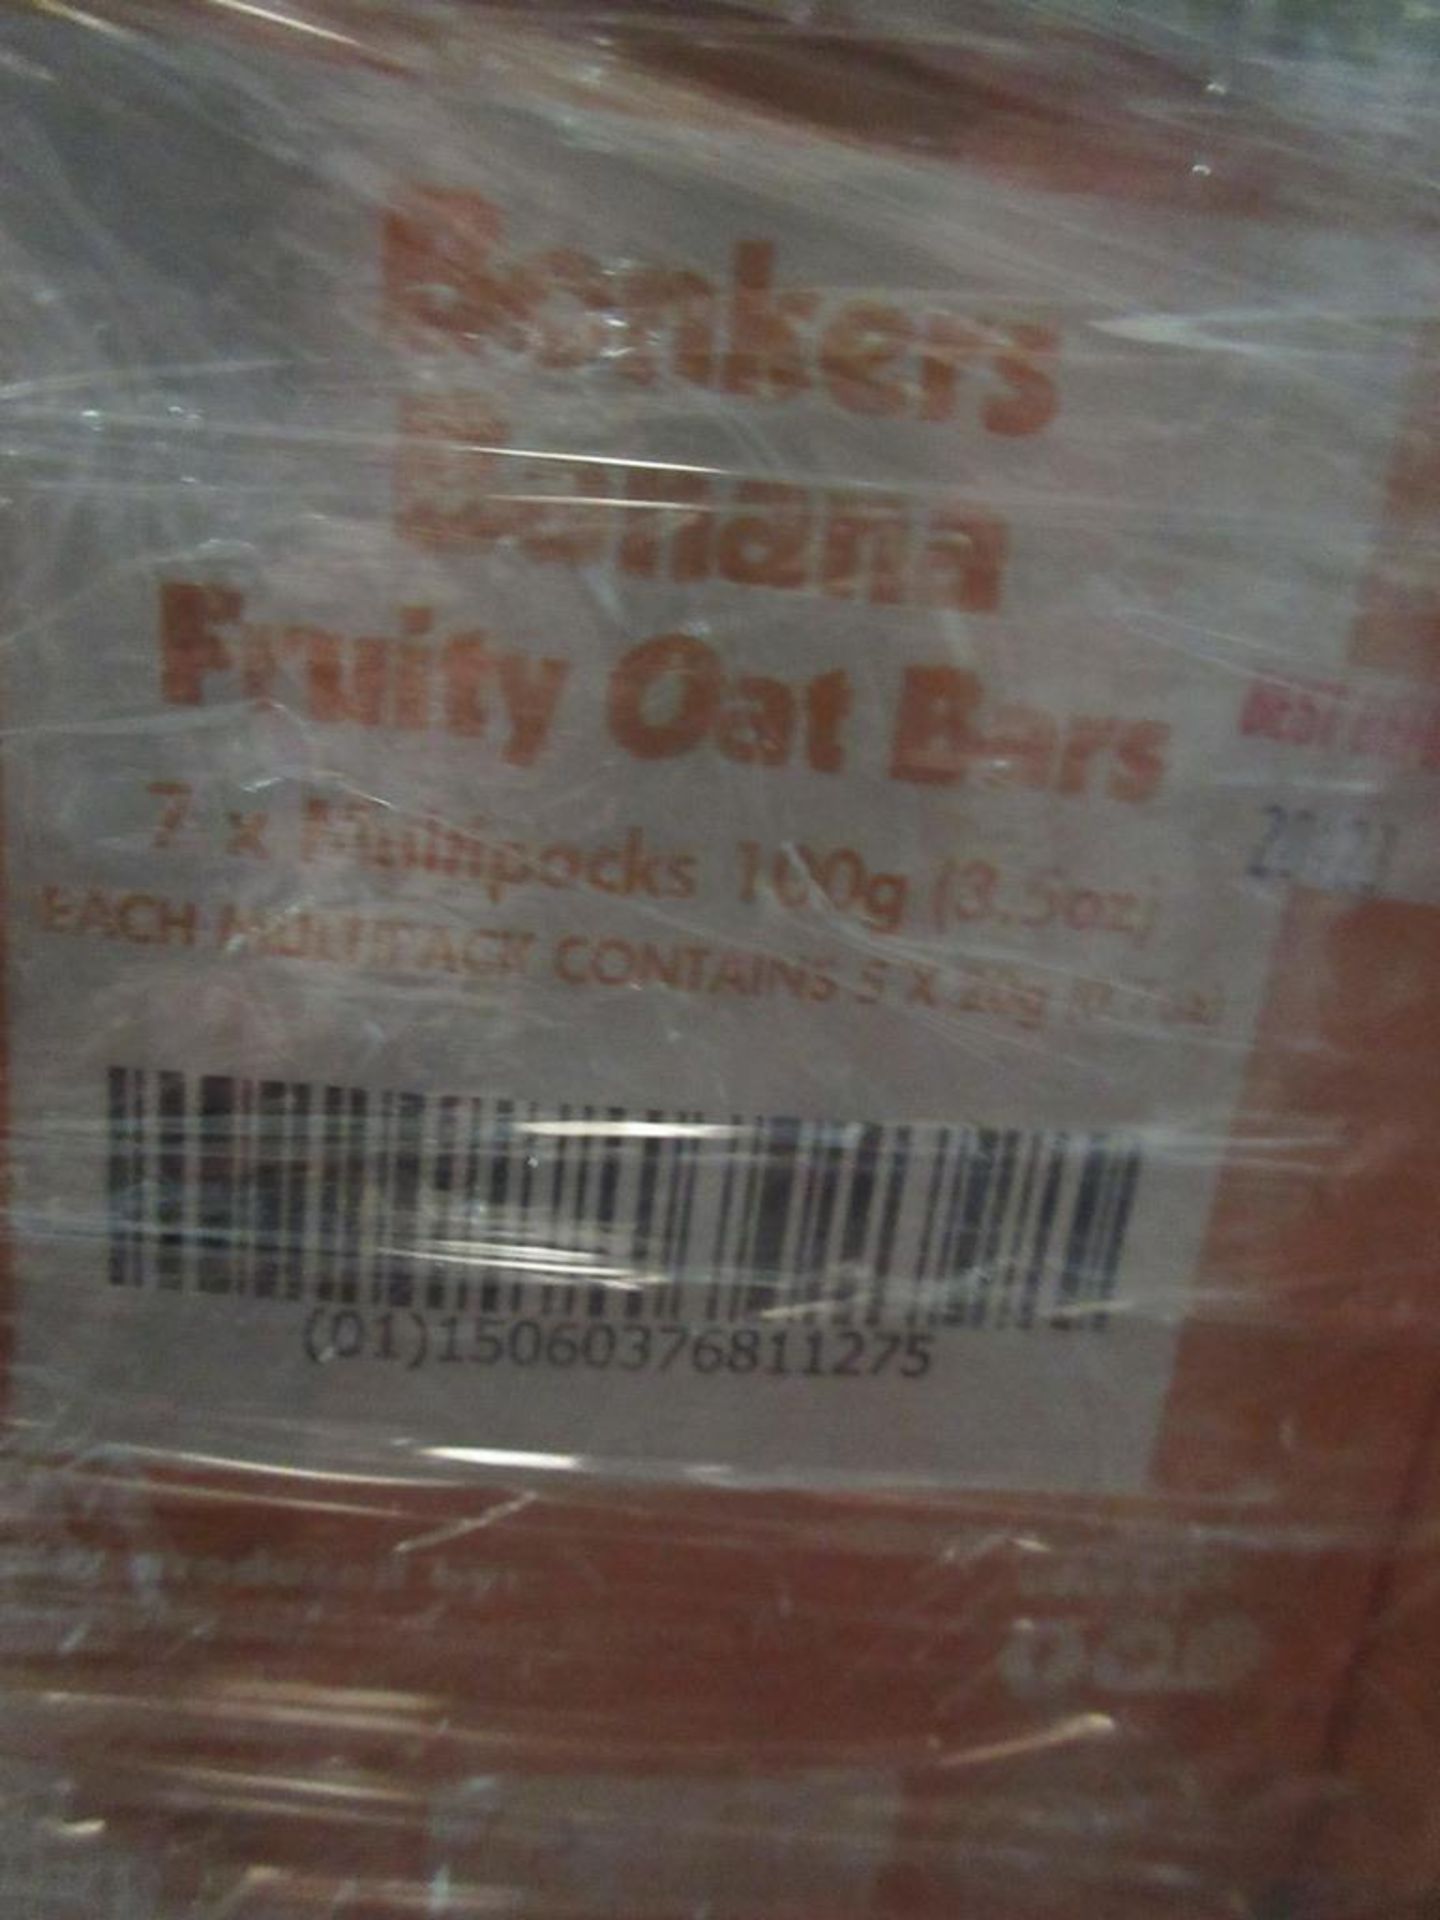 Pallet of 301 boxes x 35 x 20g Fru Crew Bonkers Banana fruit oat bars - expiry September 2023 - Image 2 of 2